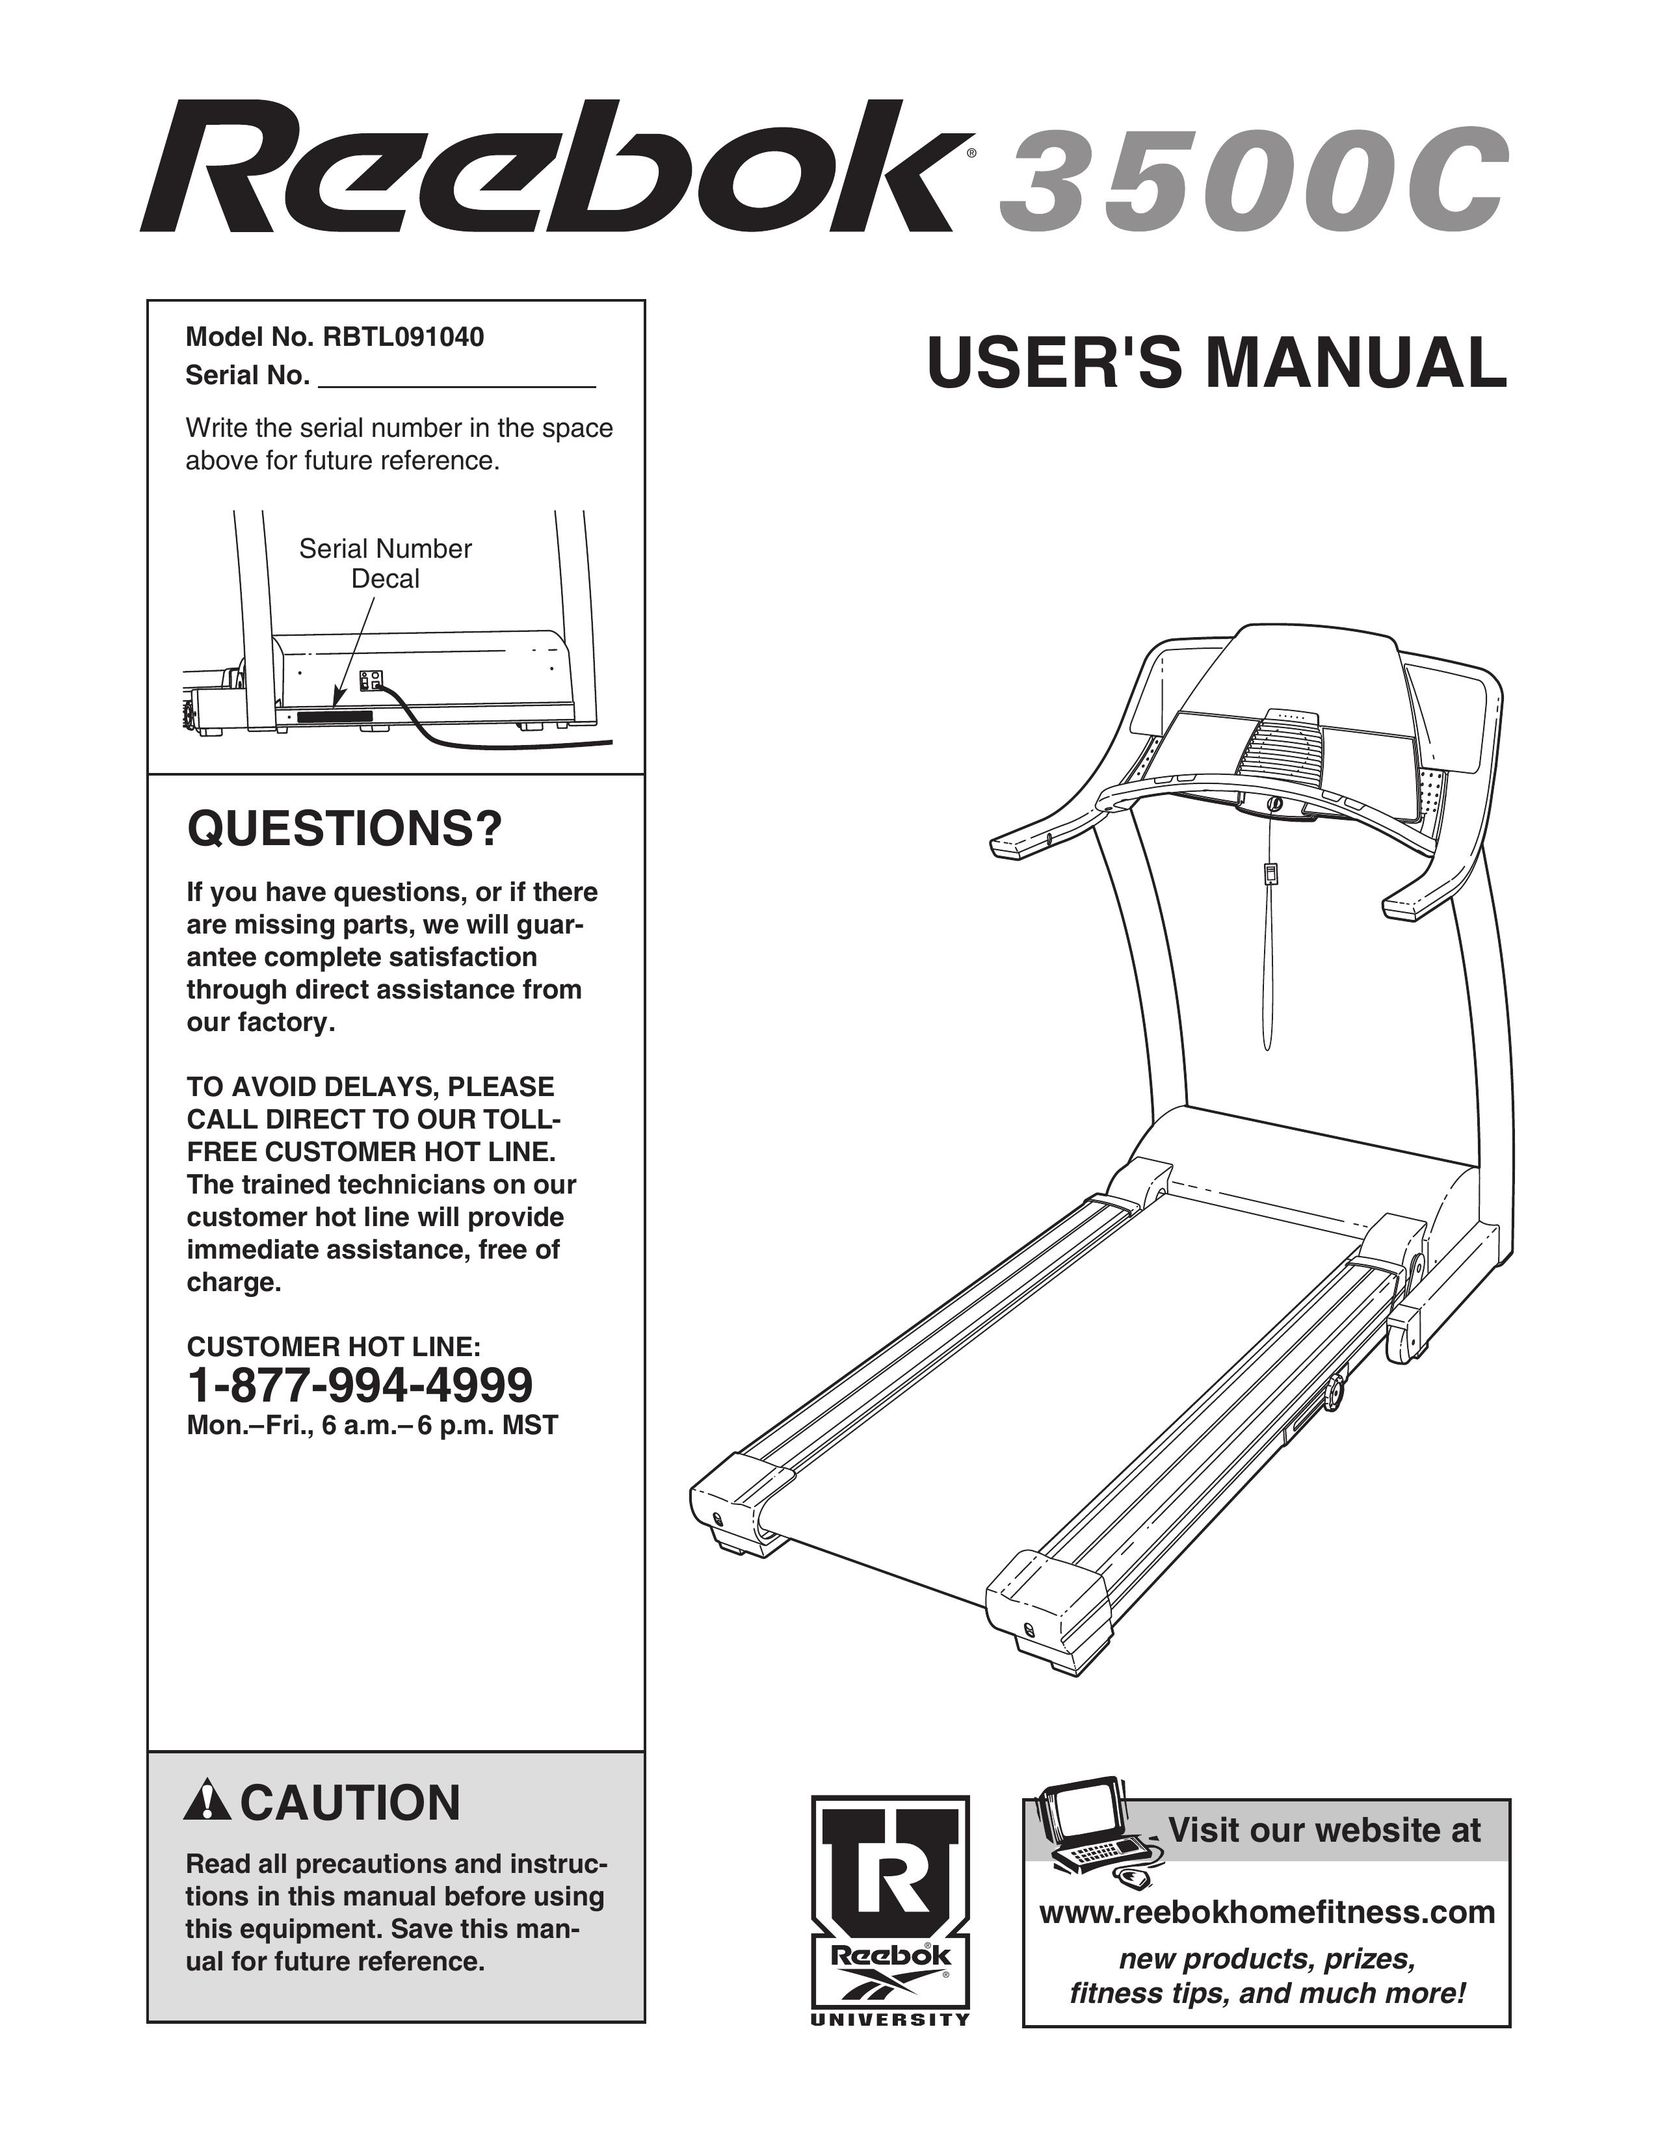 Reebok Fitness RBTL091040 Treadmill User Manual